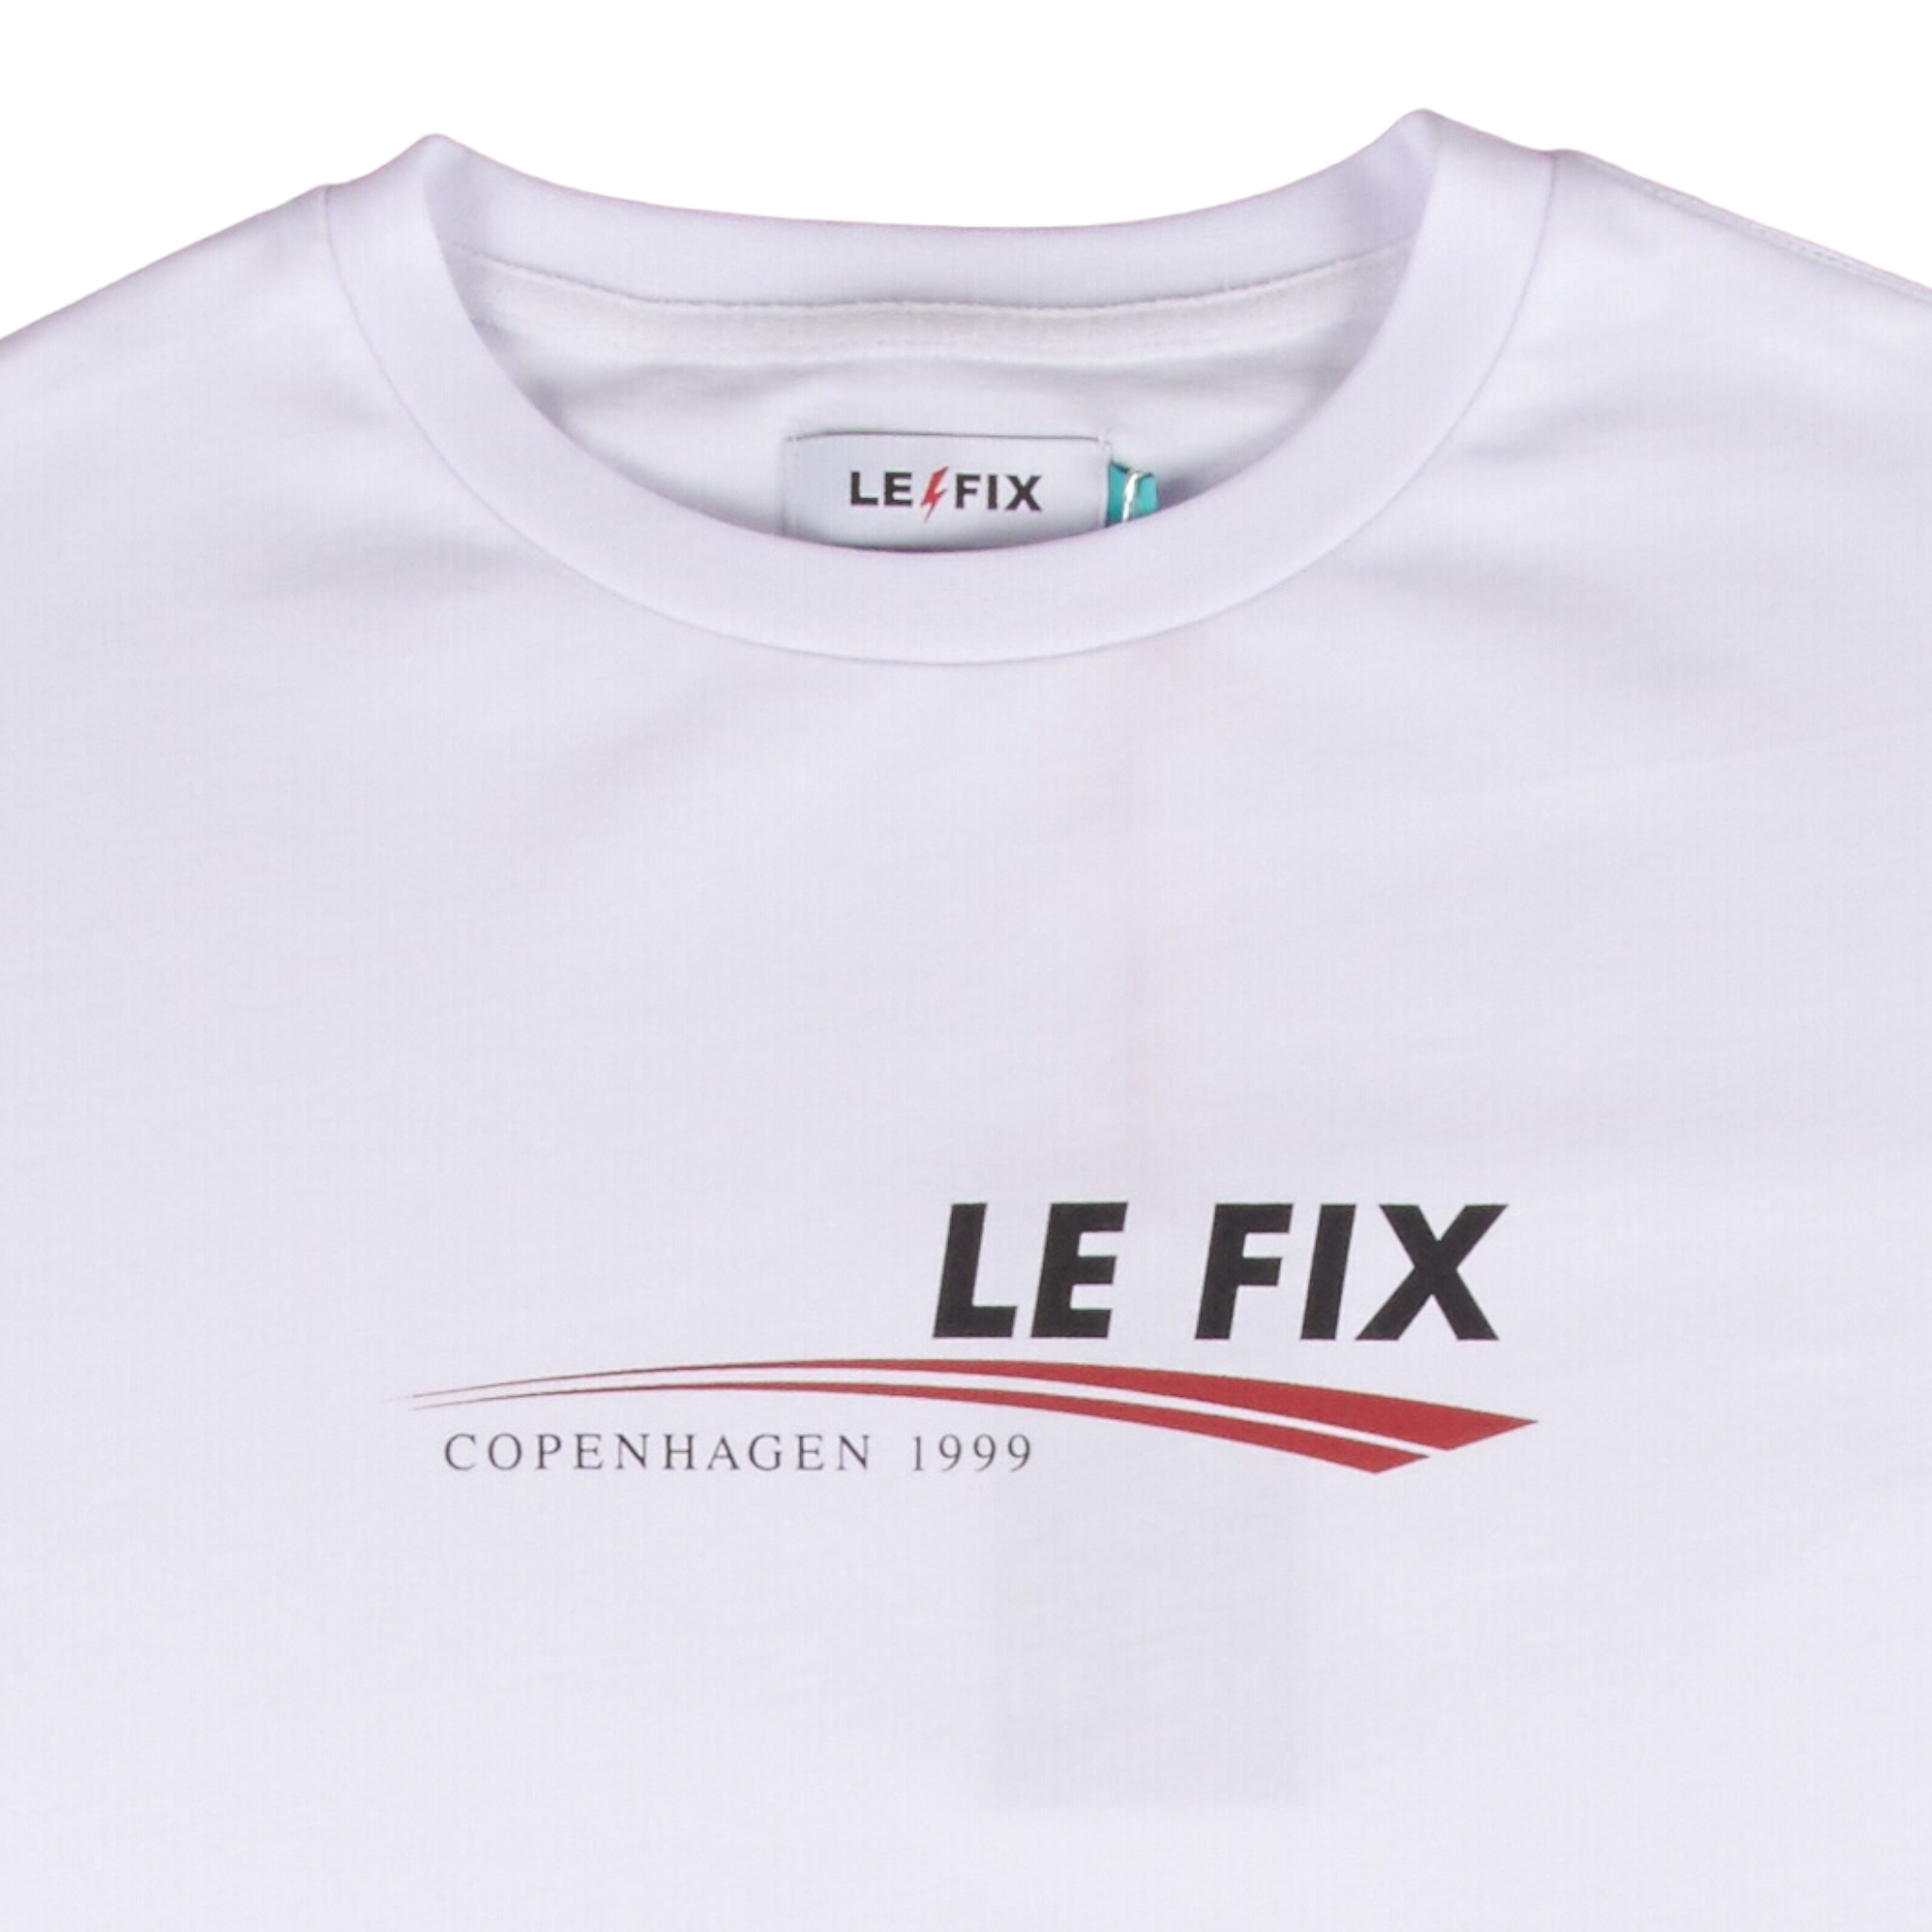 LE FIX CAMPAIGN REG. – Le-fix.com